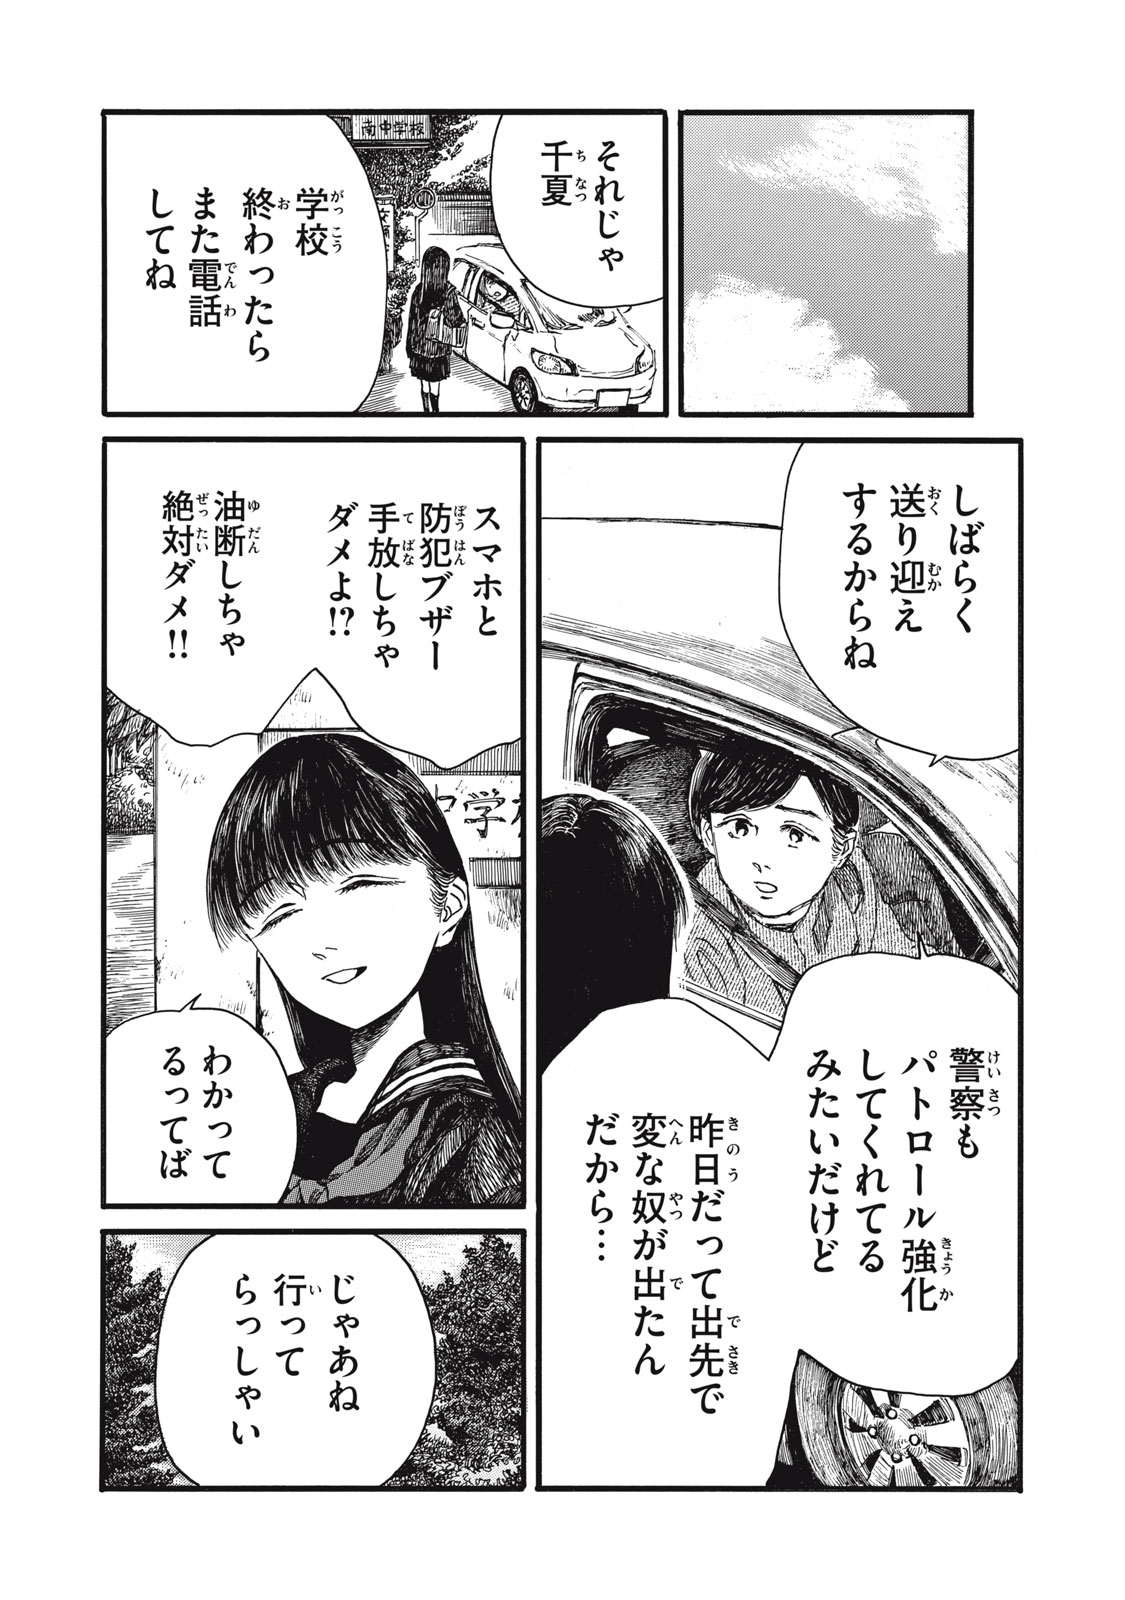 Watashi no Hara no Naka no Bakemono - Chapter 34 - Page 4